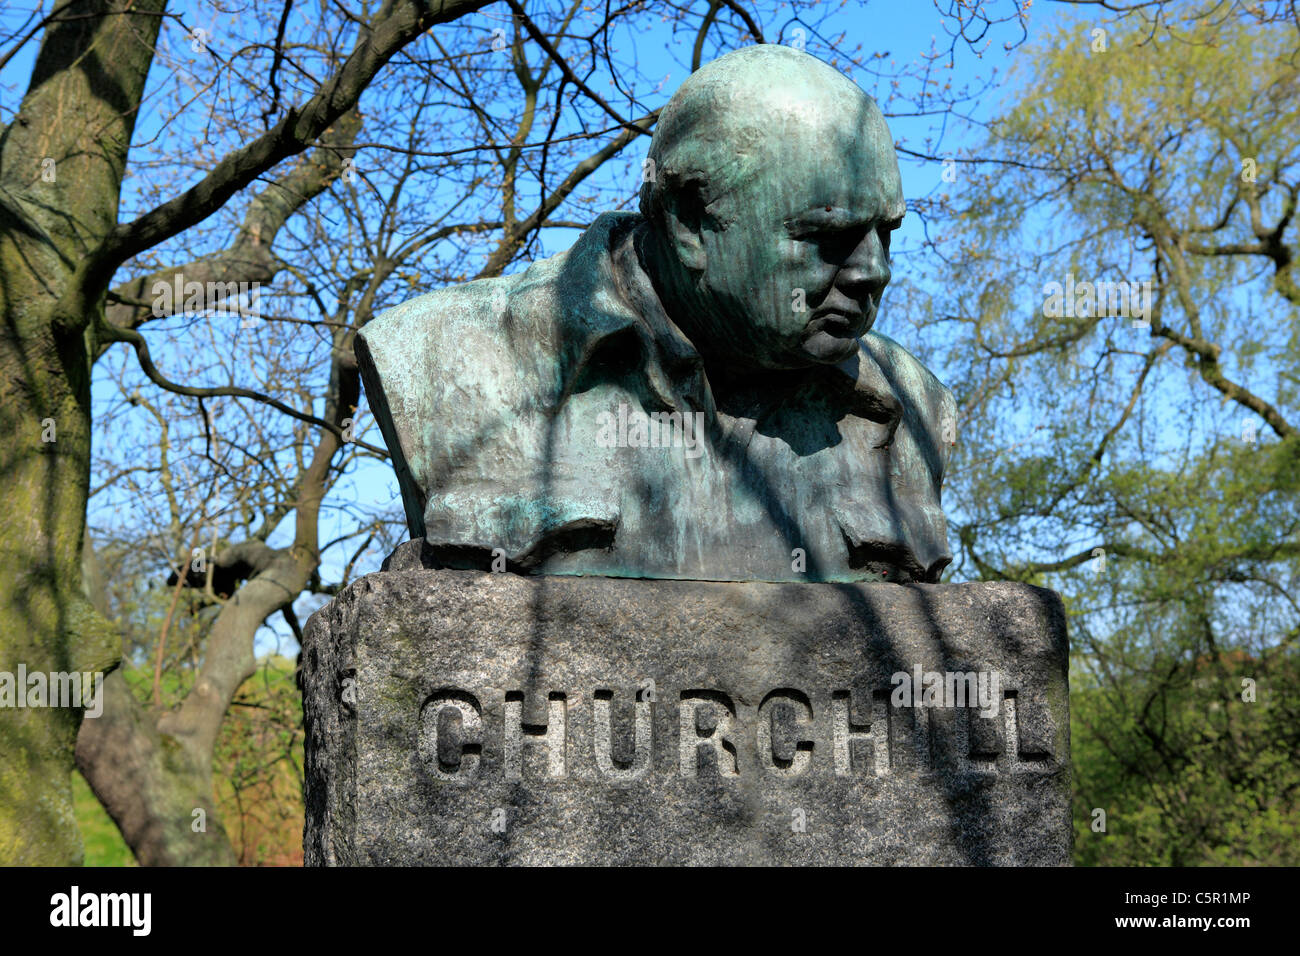 Monument to Churchill near Kastellet. Copenhagen, Denmark Stock Photo